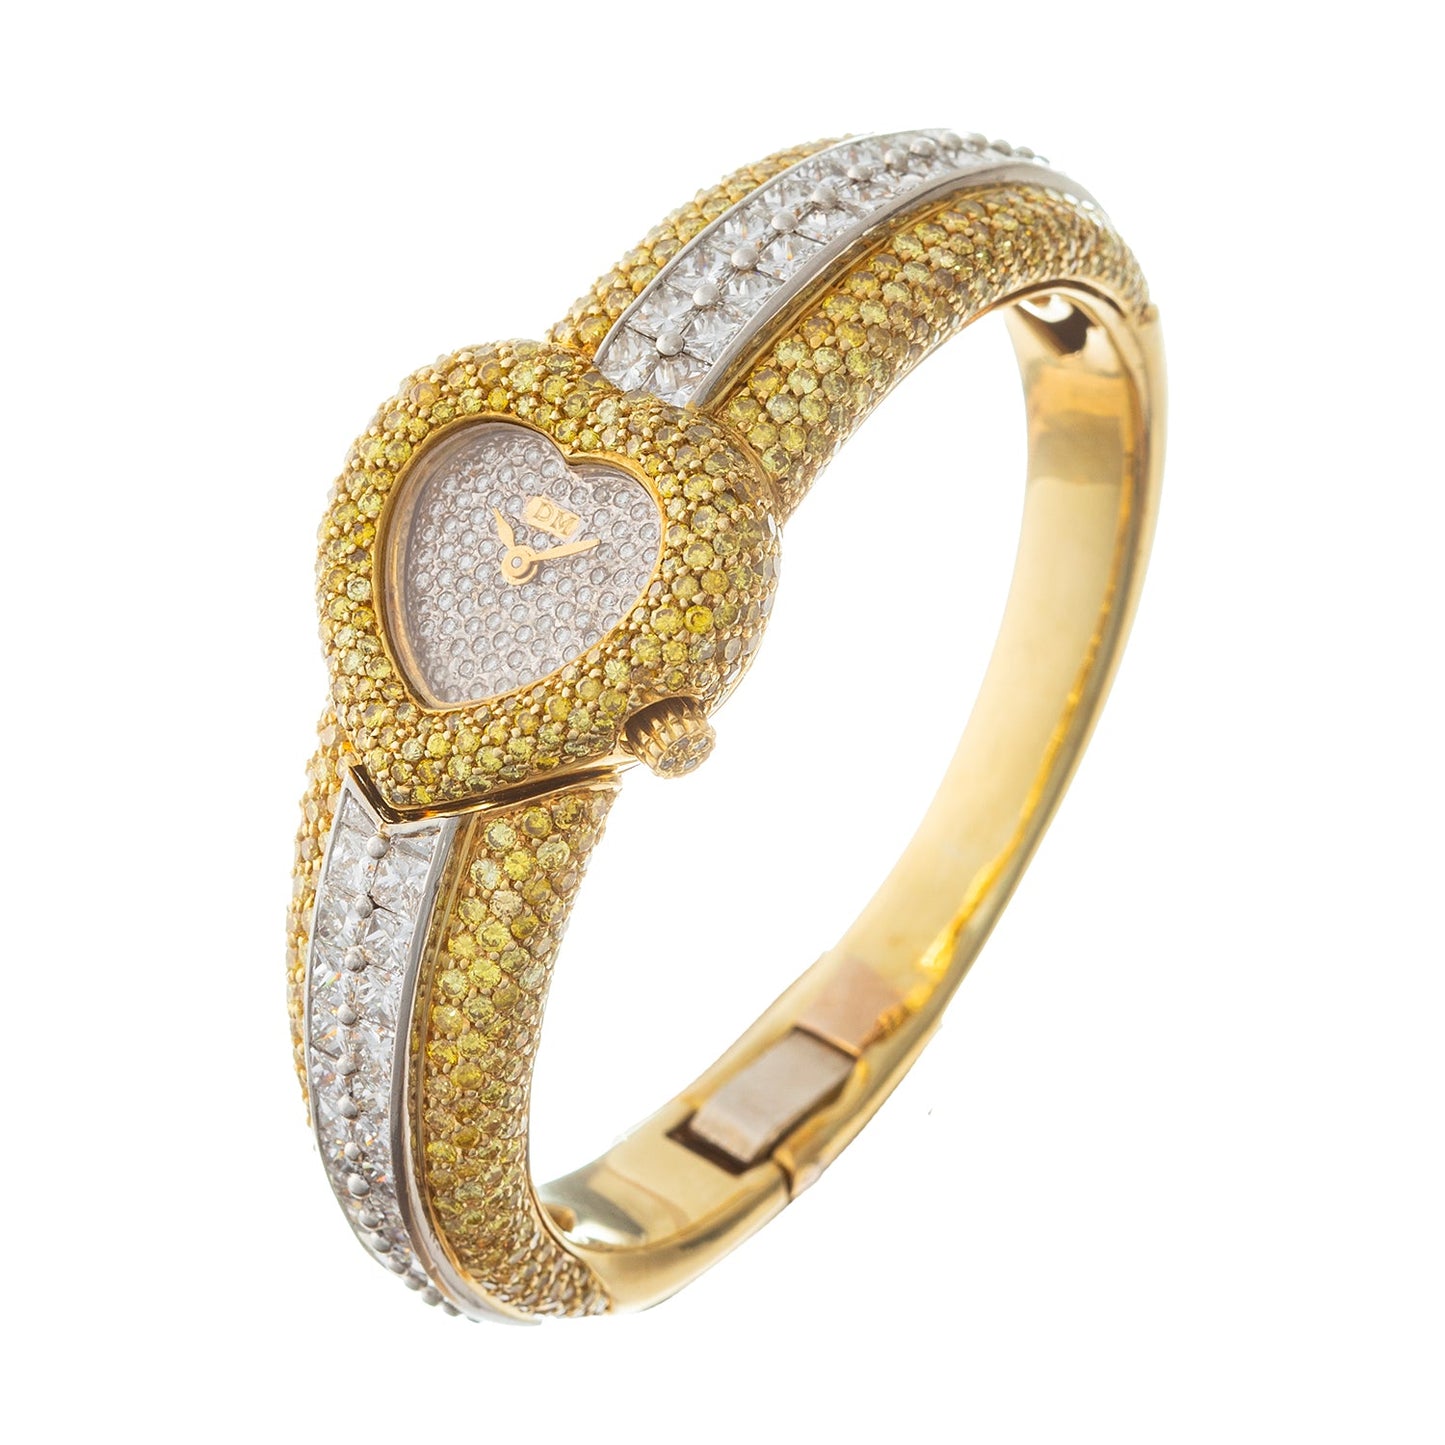 David Morris - Fancy Intense Yellow & White Diamond Bracelet Watch